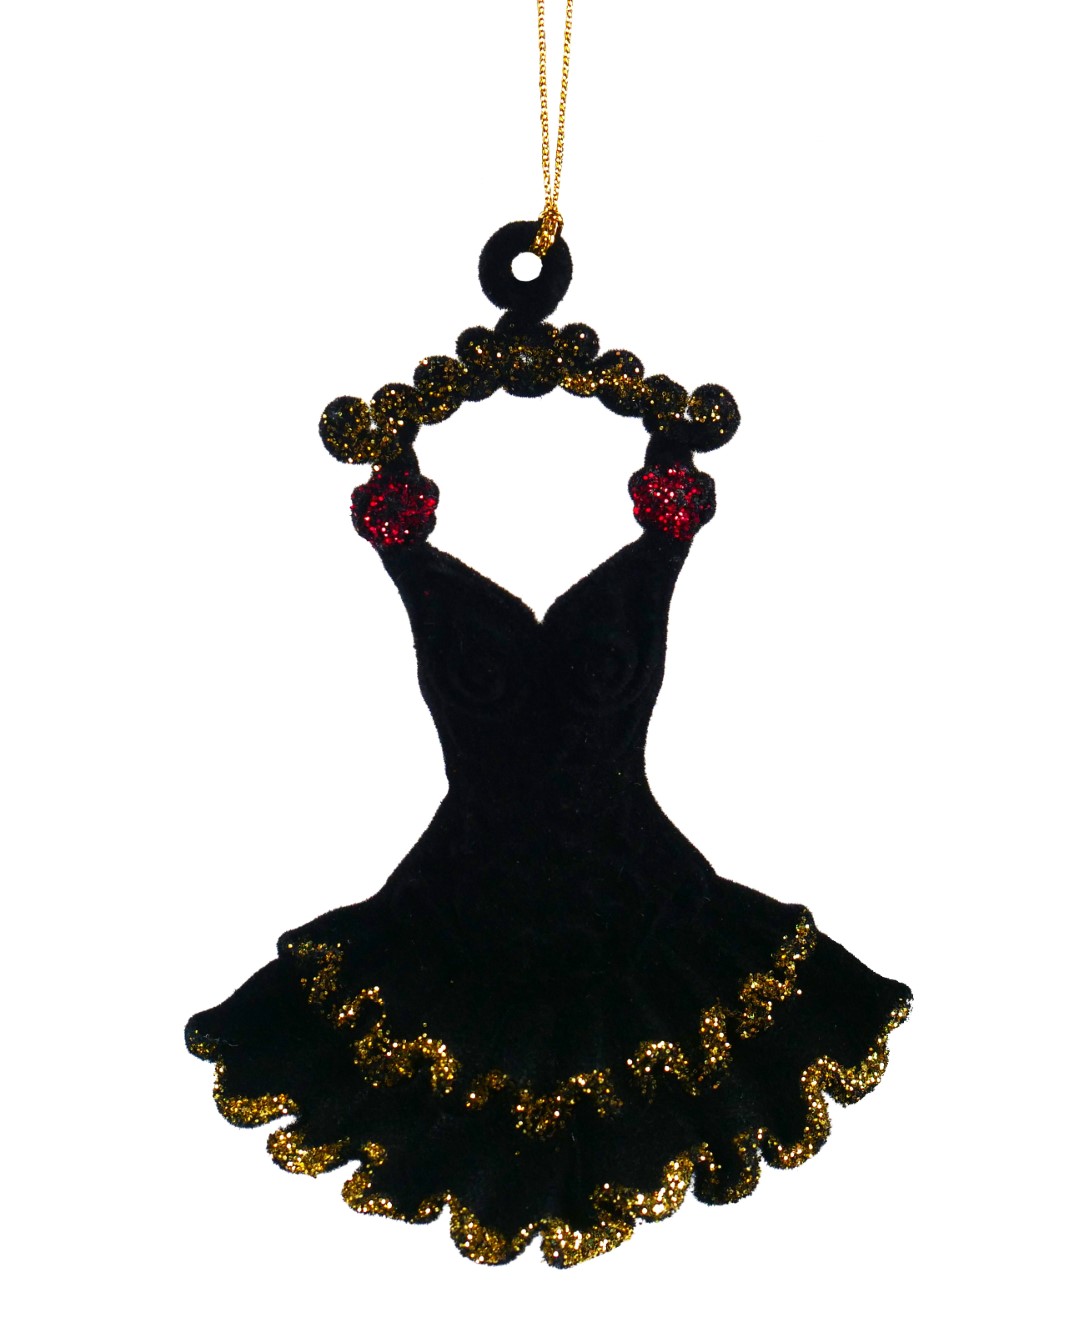 Ornament plastic rode jurk l9cm - Kurt S. Adler